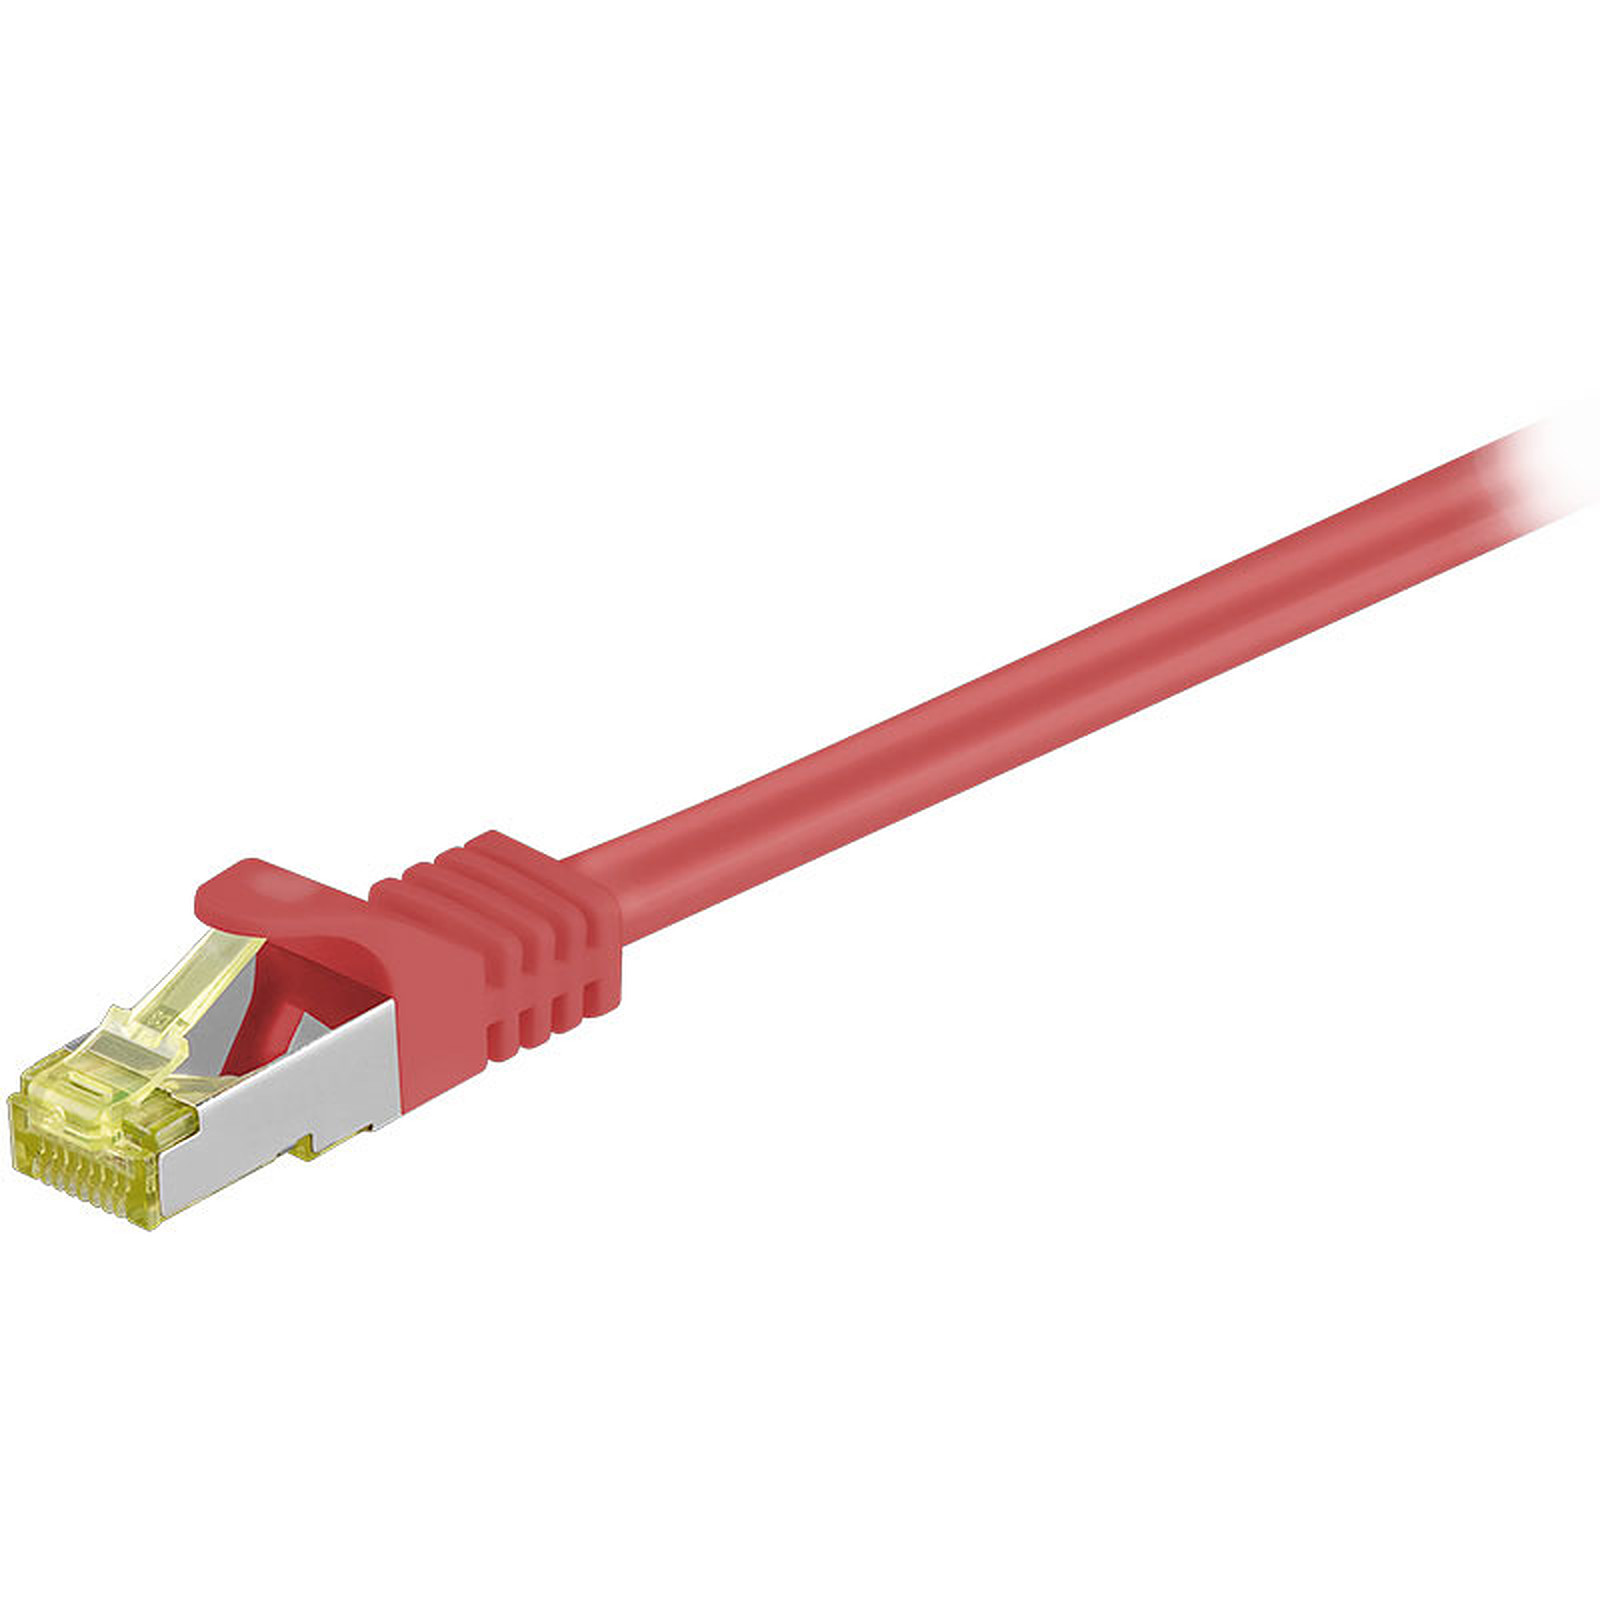 Cordon RJ45 categorie 7 S/FTP 10 m (Rouge) - Cable RJ45 Generique